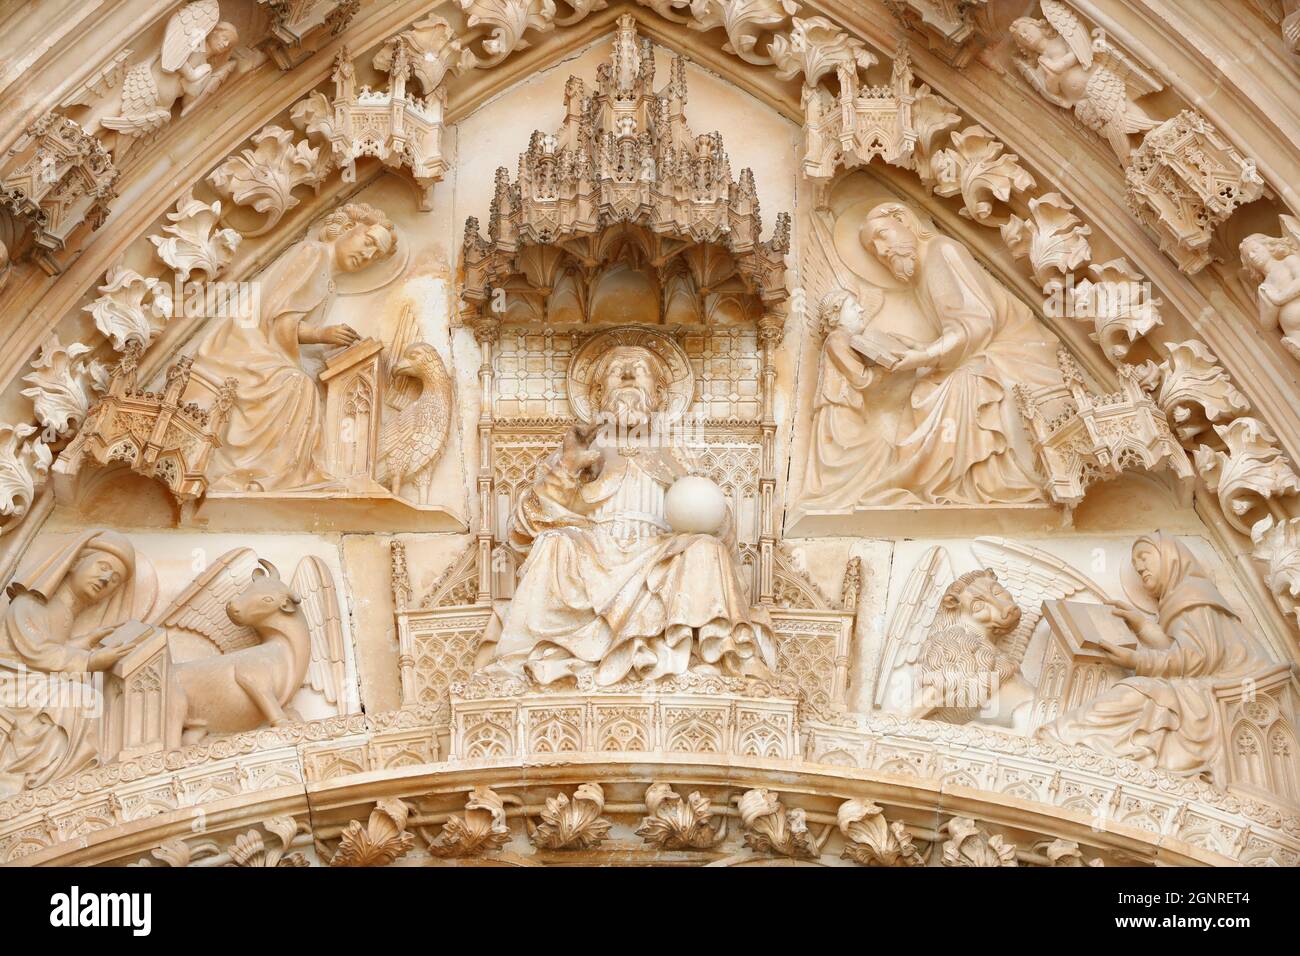 Monasterio de Batalha. Arquitectura gótica tardía, mezclada con el estilo Manueline. Portal occidental. Jesús con los 4 evangelistas. Portugal. Foto de stock